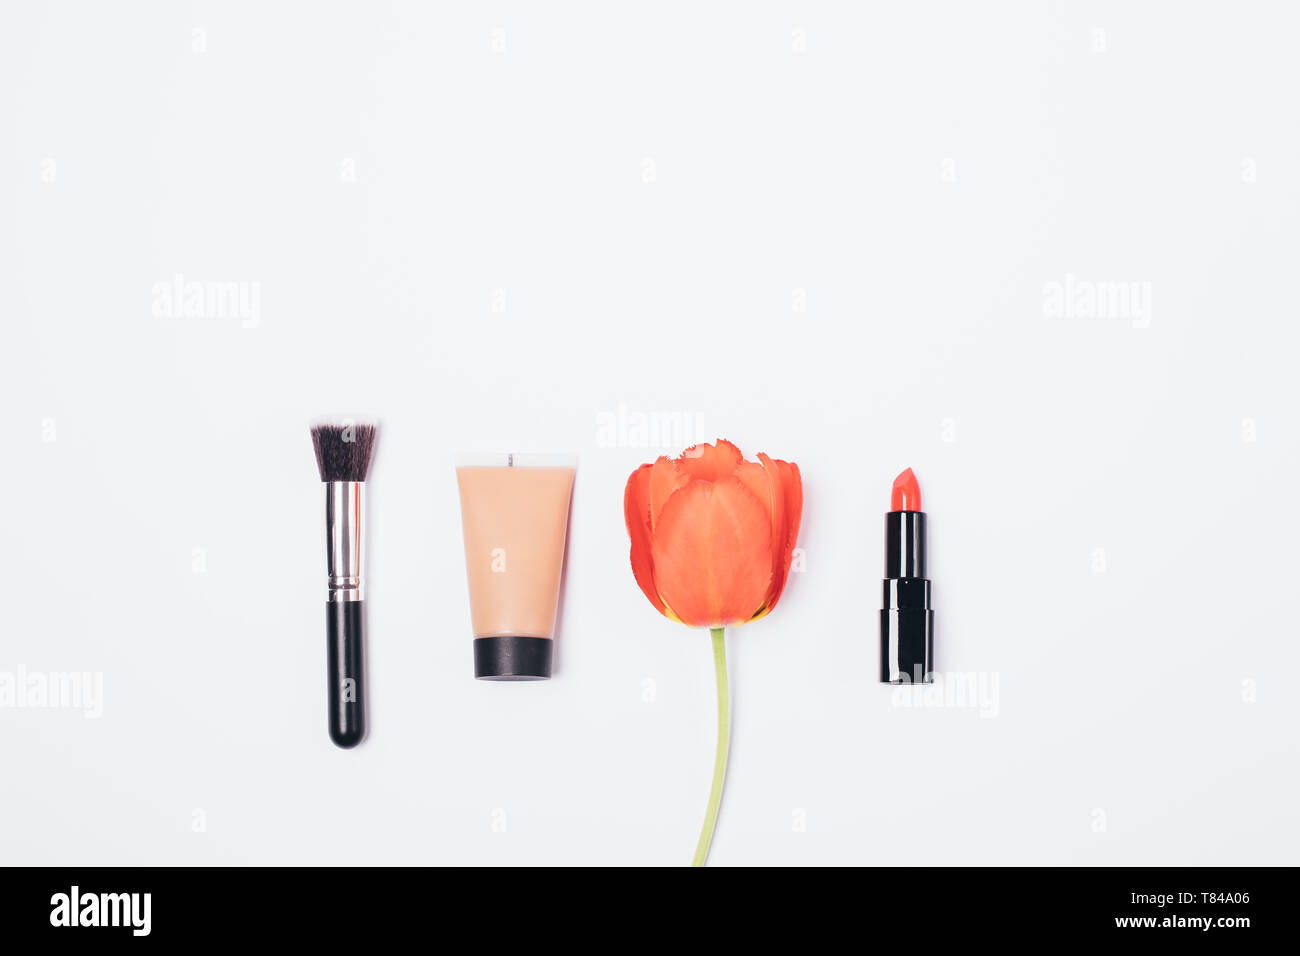 Prodotti cosmetici per classic basic make-up, piatta concetto. Vista superiore spazzola, crema fondotinta e rossetto rosso accanto al tulip flower su sfondo bianco. Foto Stock